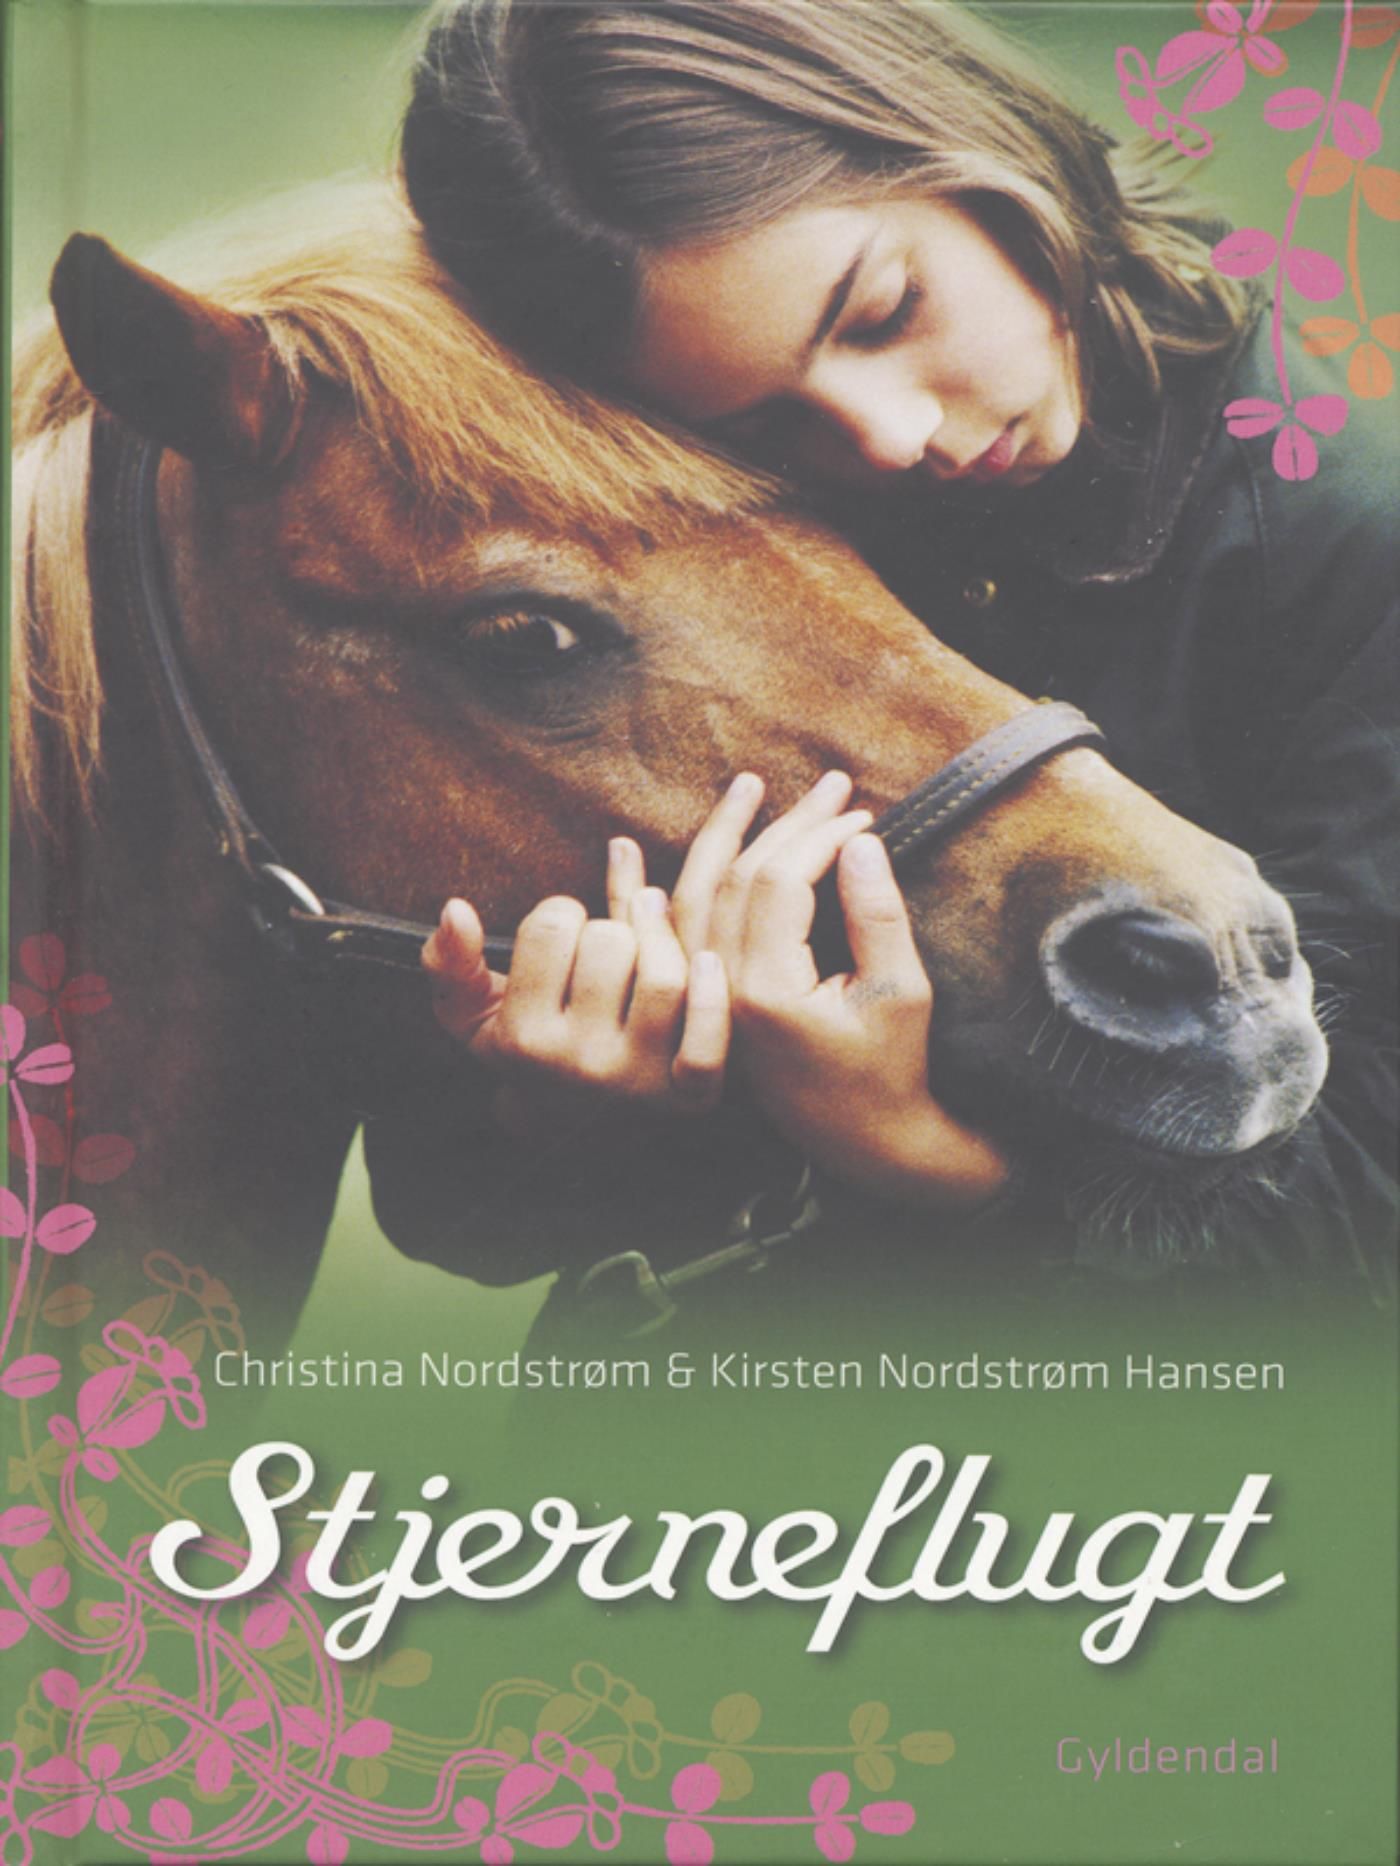 Stjerneflugt, eBook by Kirsten Nordstrøm Hansen, Christina Nordstrøm